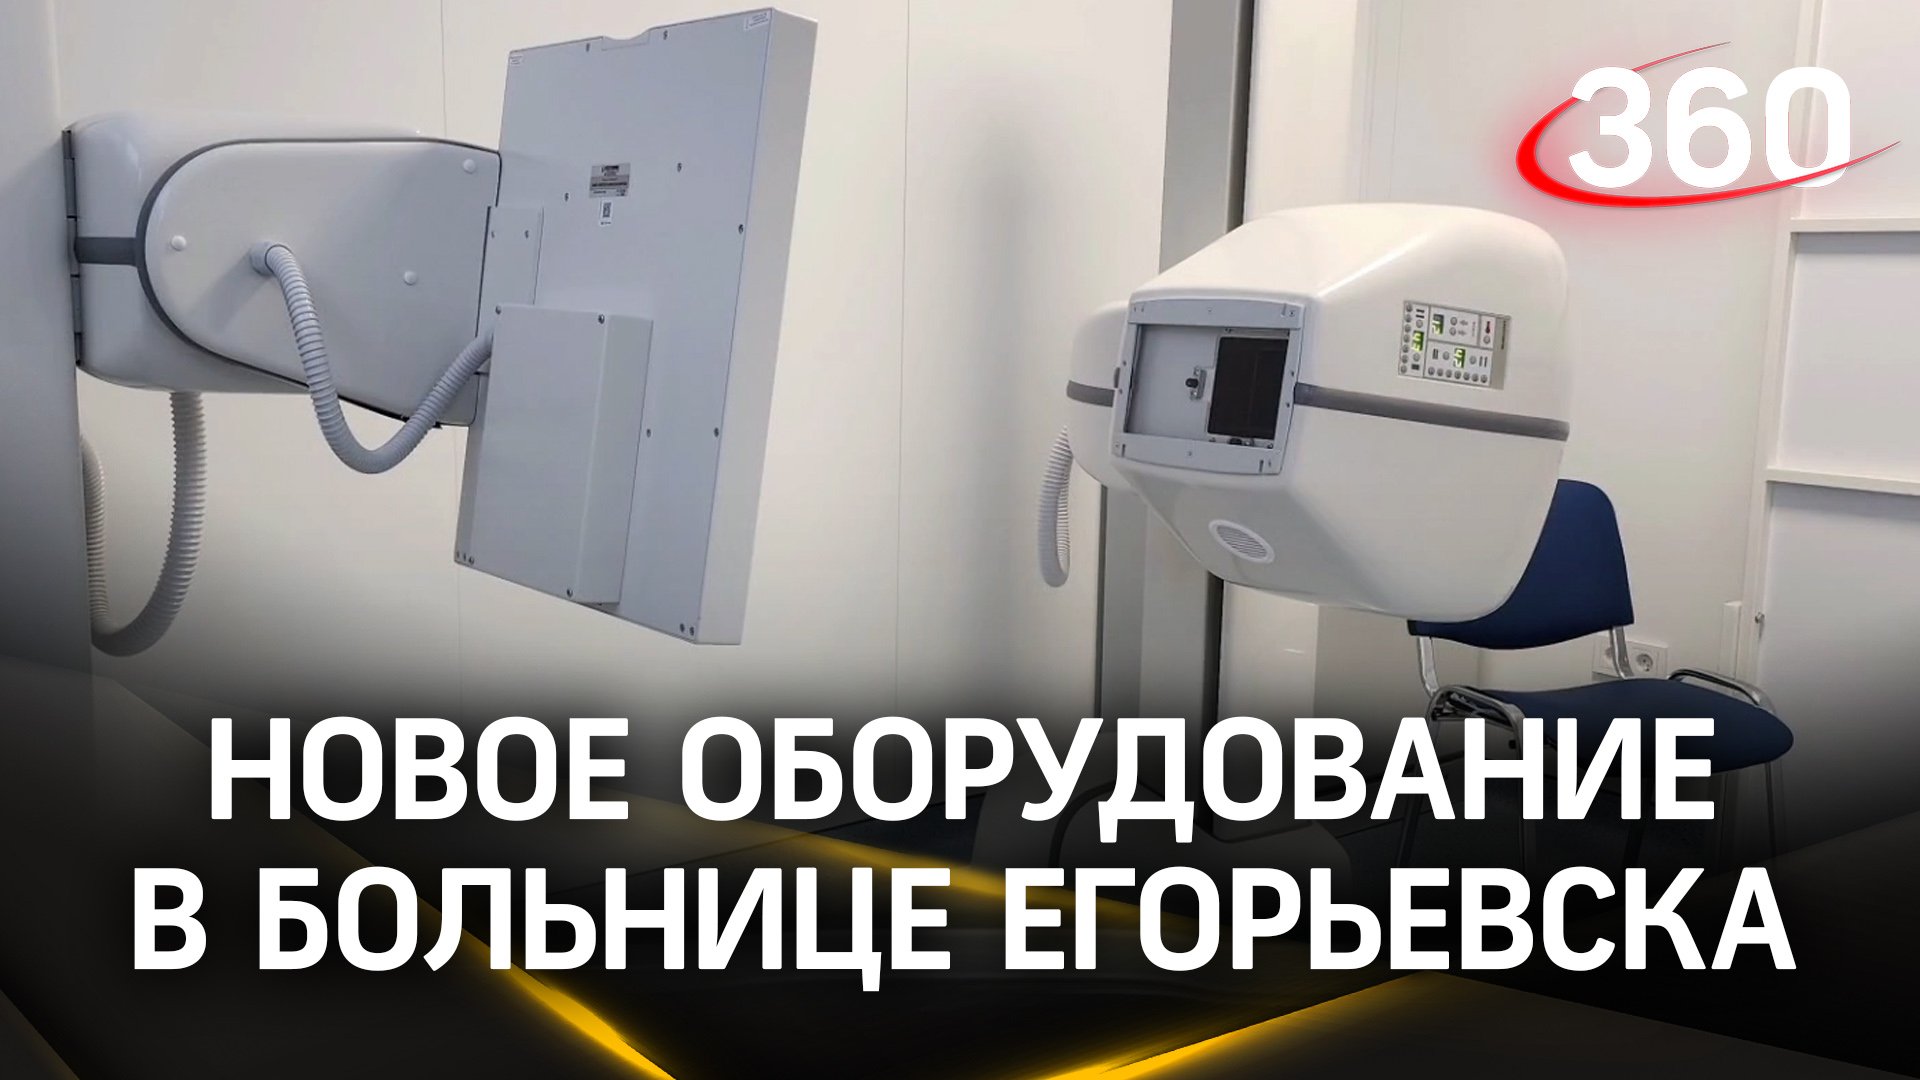 В Егорьевской больнице появилось новое оборудование